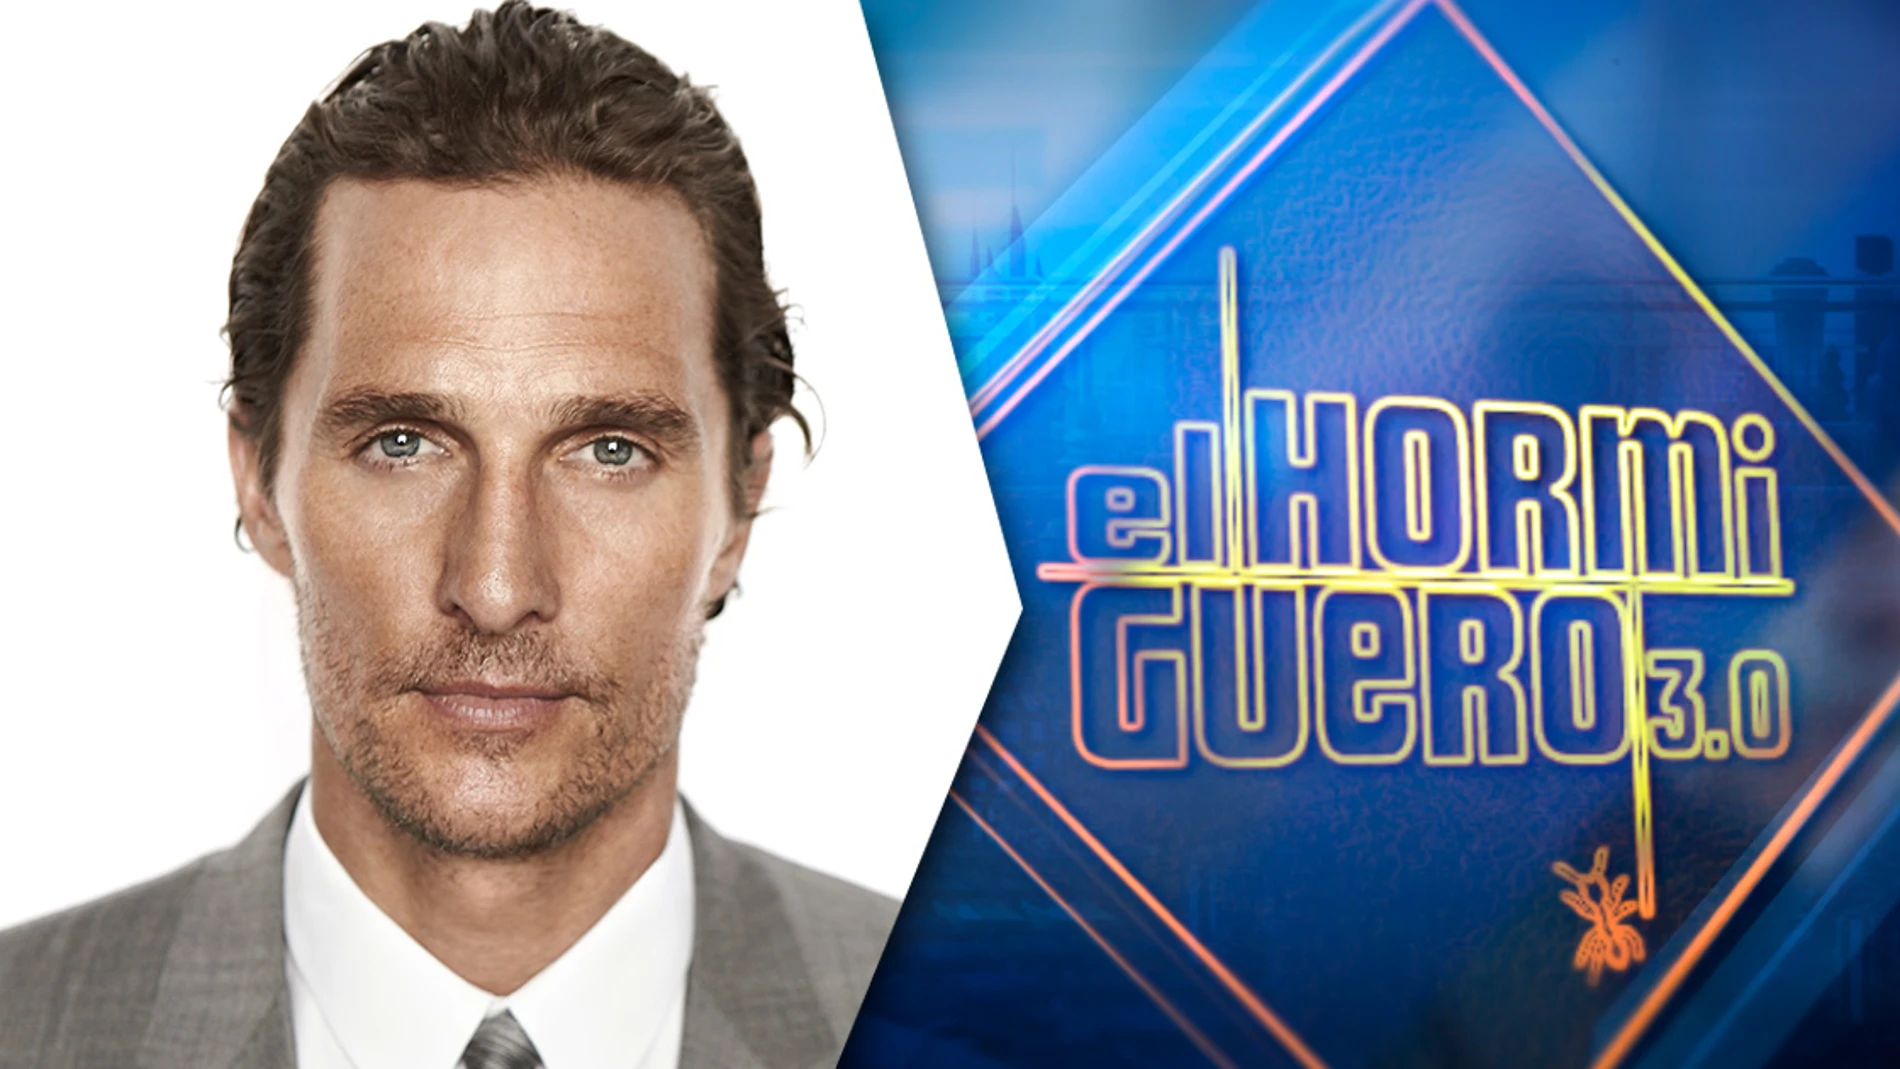 El jueves, el actor Matthew McConaughey presentará en &#39;El Hormiguero 3.0&#39; su nuevo libro